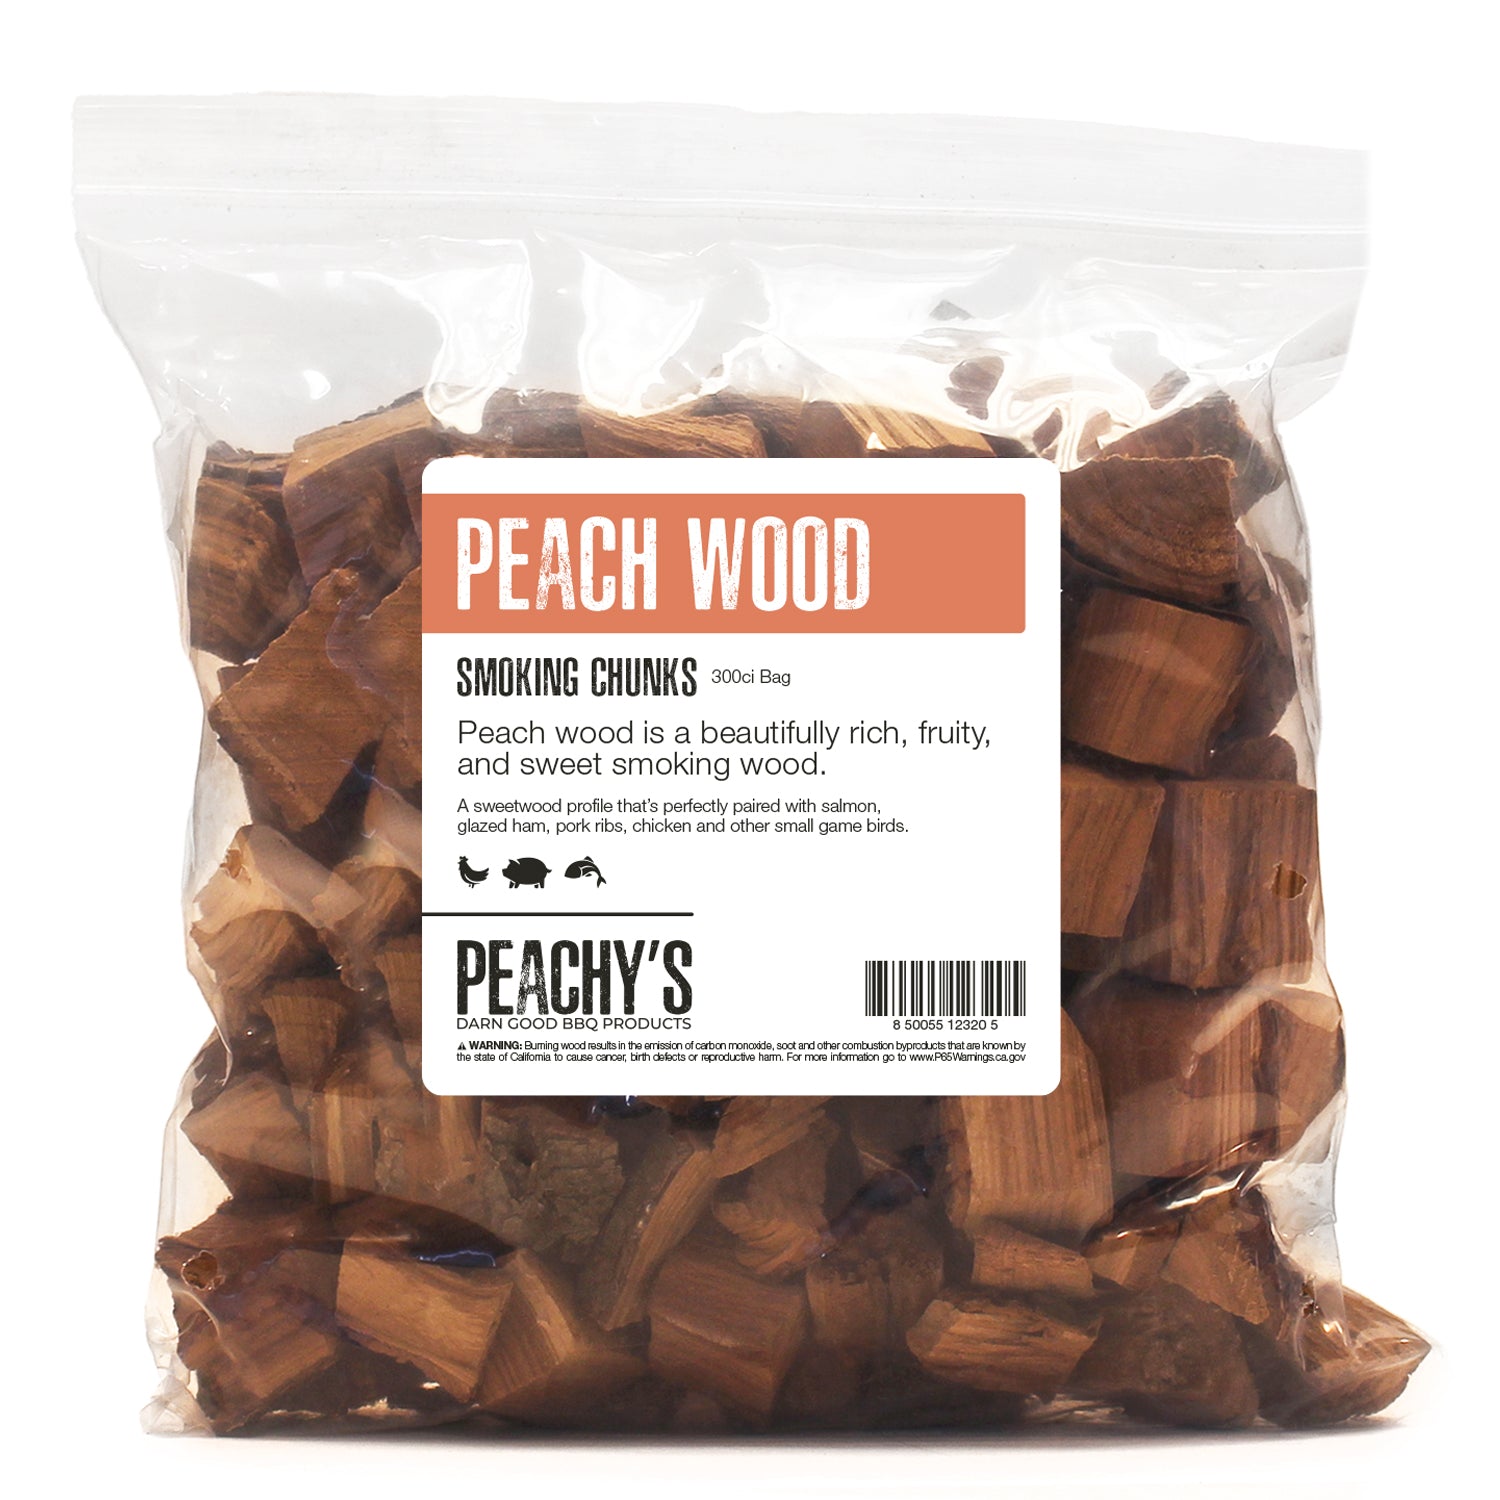 PEACH Chunks | 300ci Bag of Premium Smoking Woods by PEACHY'S